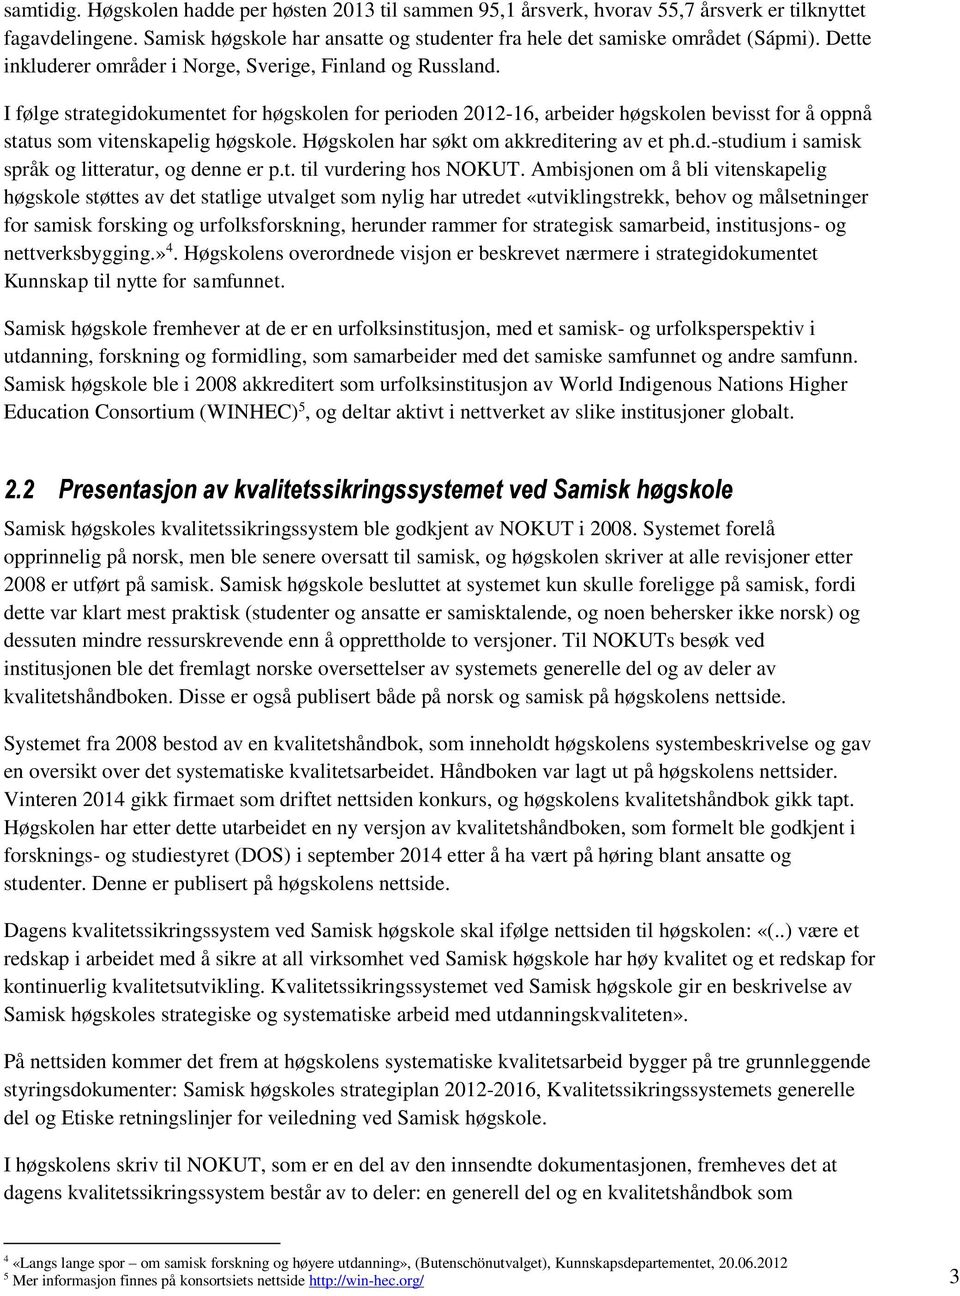 Høgskolen har søkt om akkreditering av et ph.d.-studium i samisk språk og litteratur, og denne er p.t. til vurdering hos NOKUT.